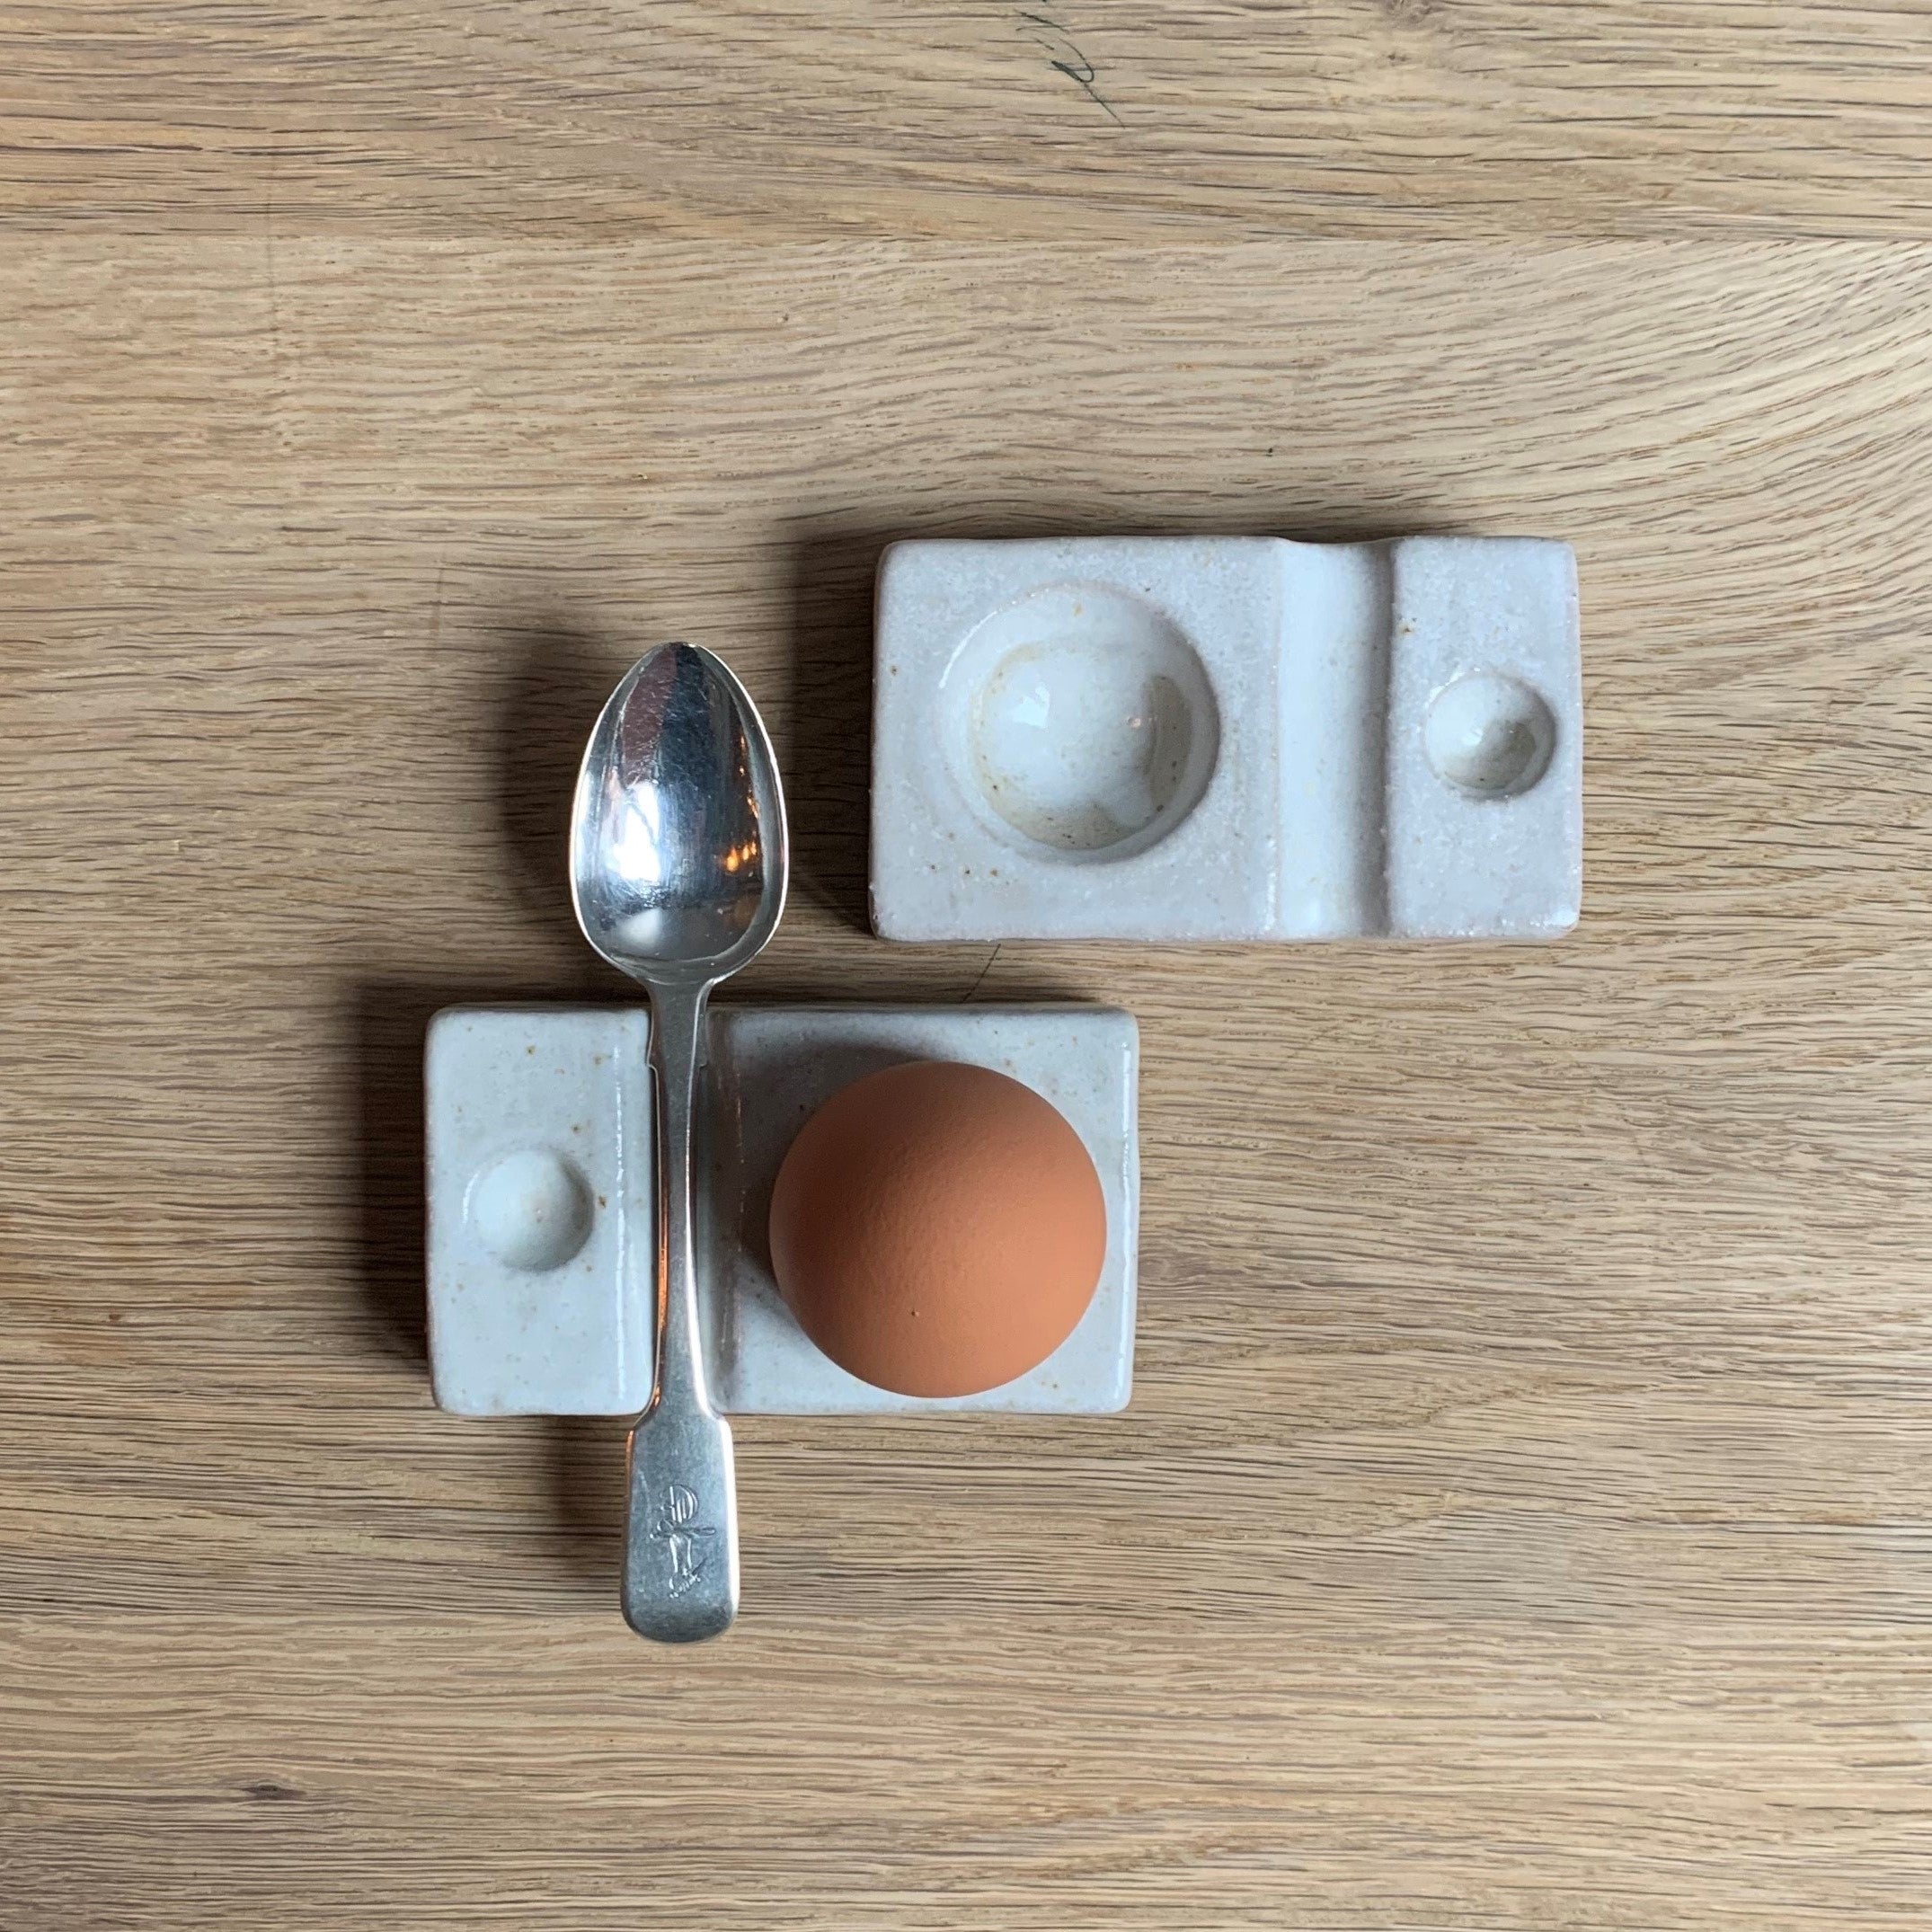 Ceramic Egg Cup with Spoon Rest  Boiled Egg Holder & Vintage Egg